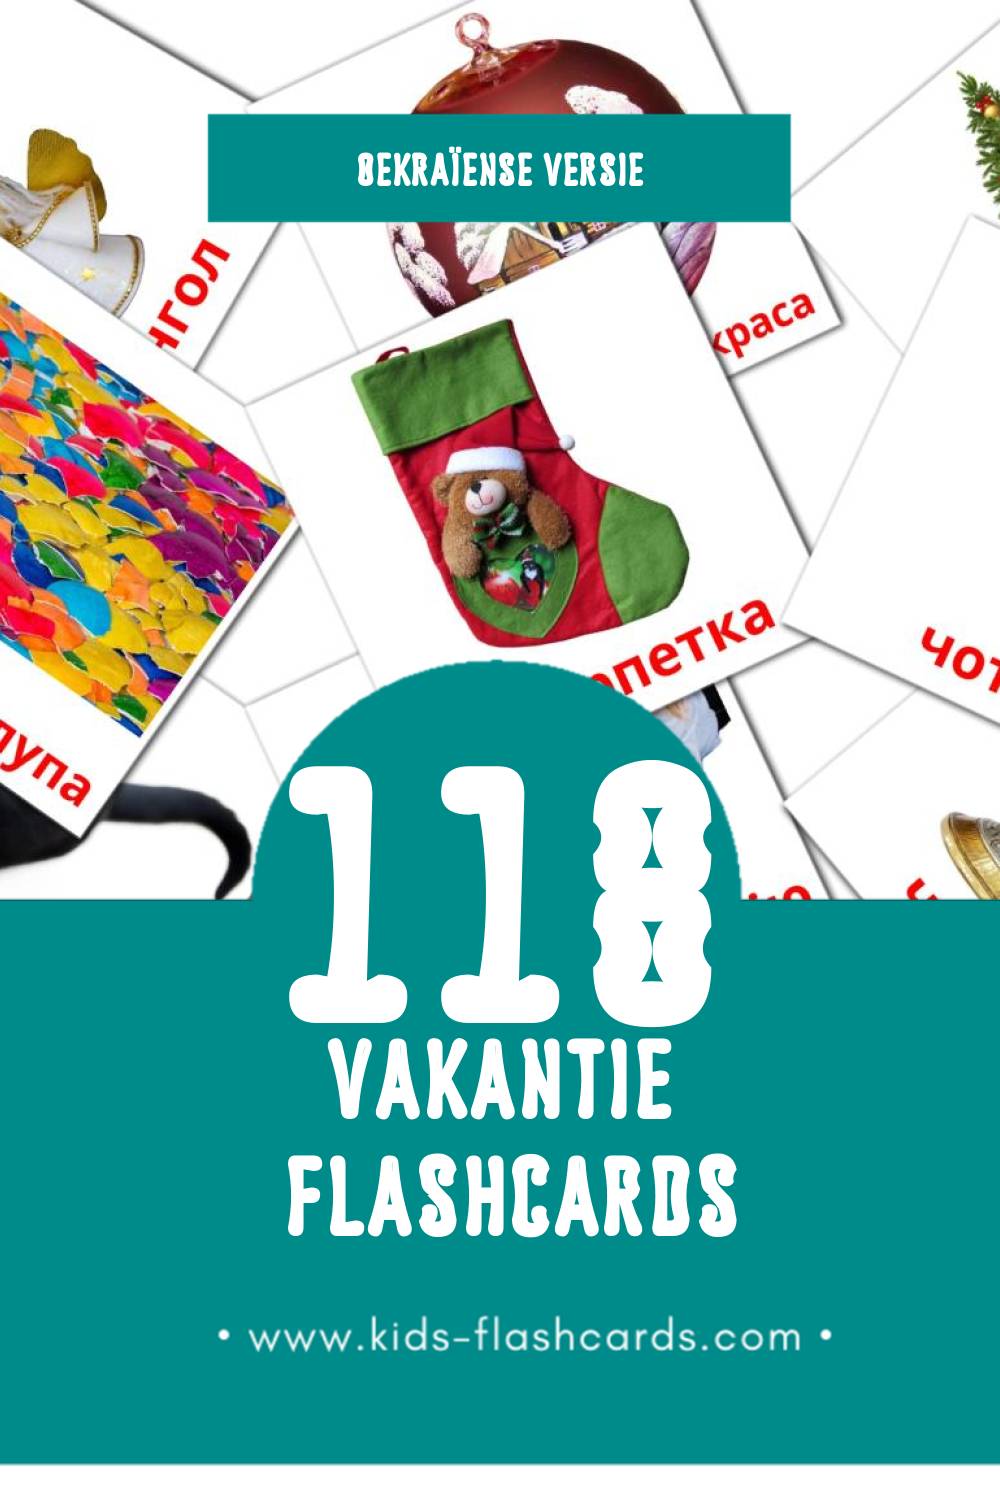 Visuele Свята Flashcards voor Kleuters (118 kaarten in het Oekraïens)